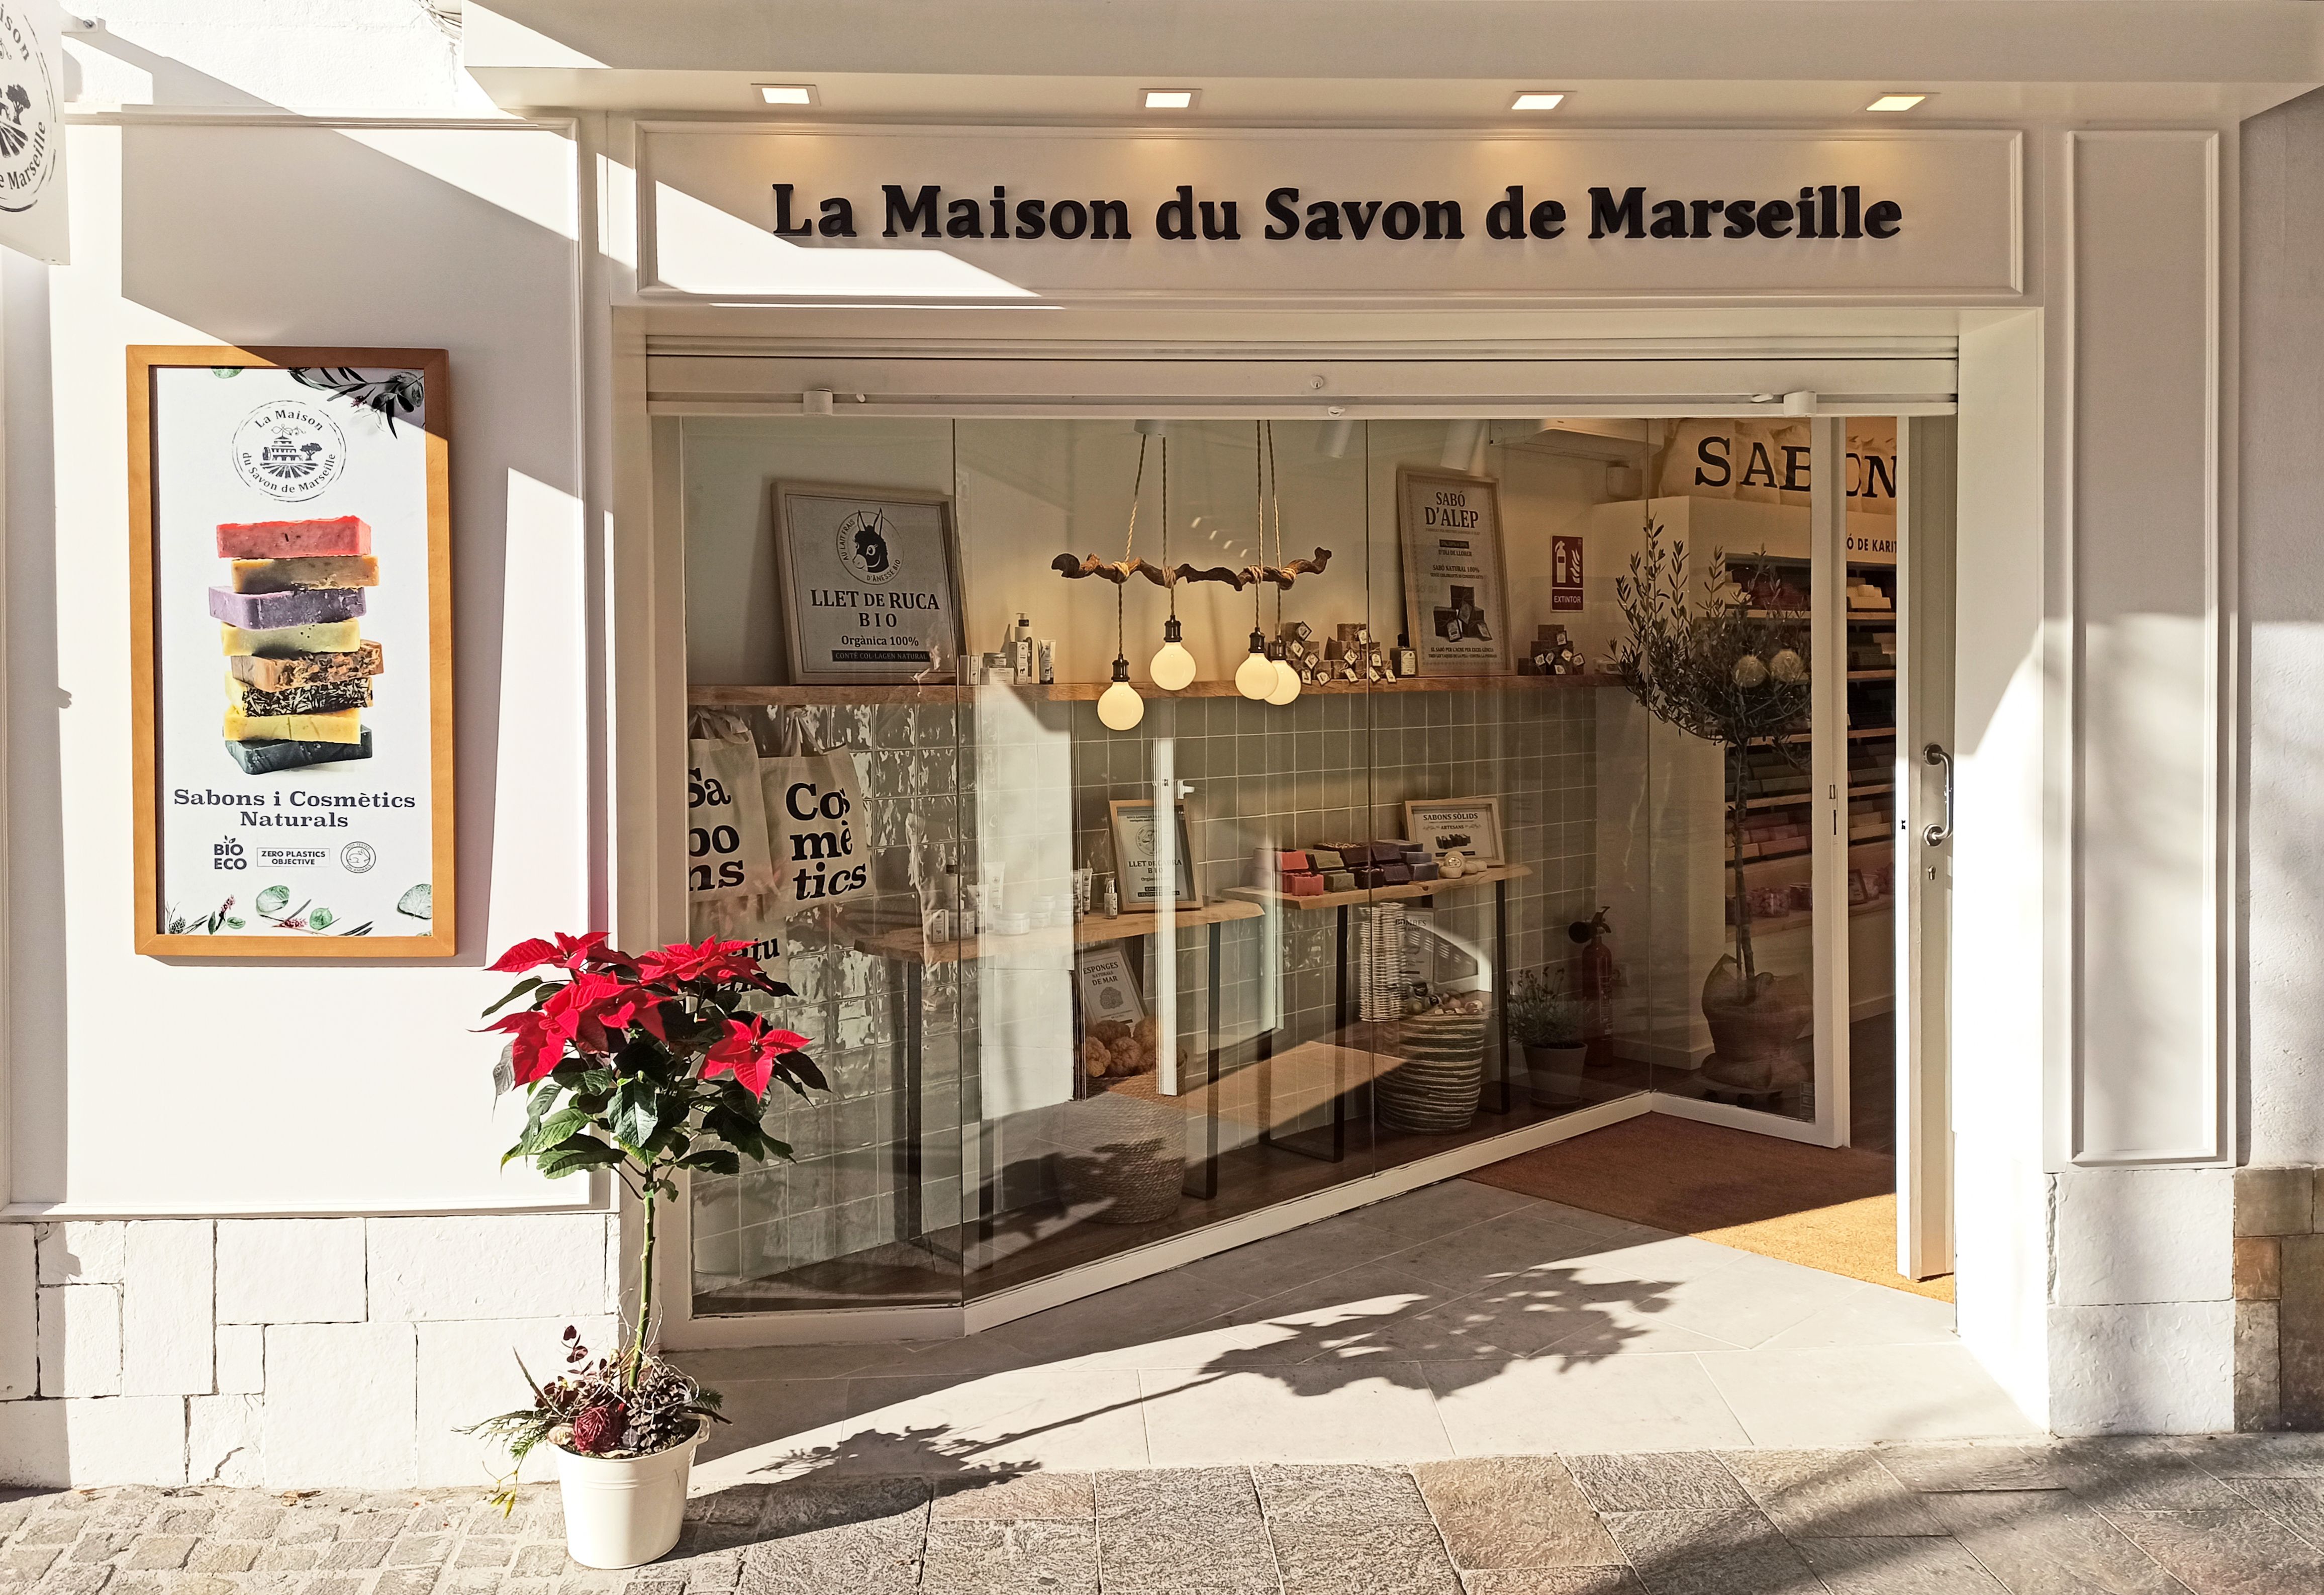 Le Maison du Savon de Marseille  Sant Cugat